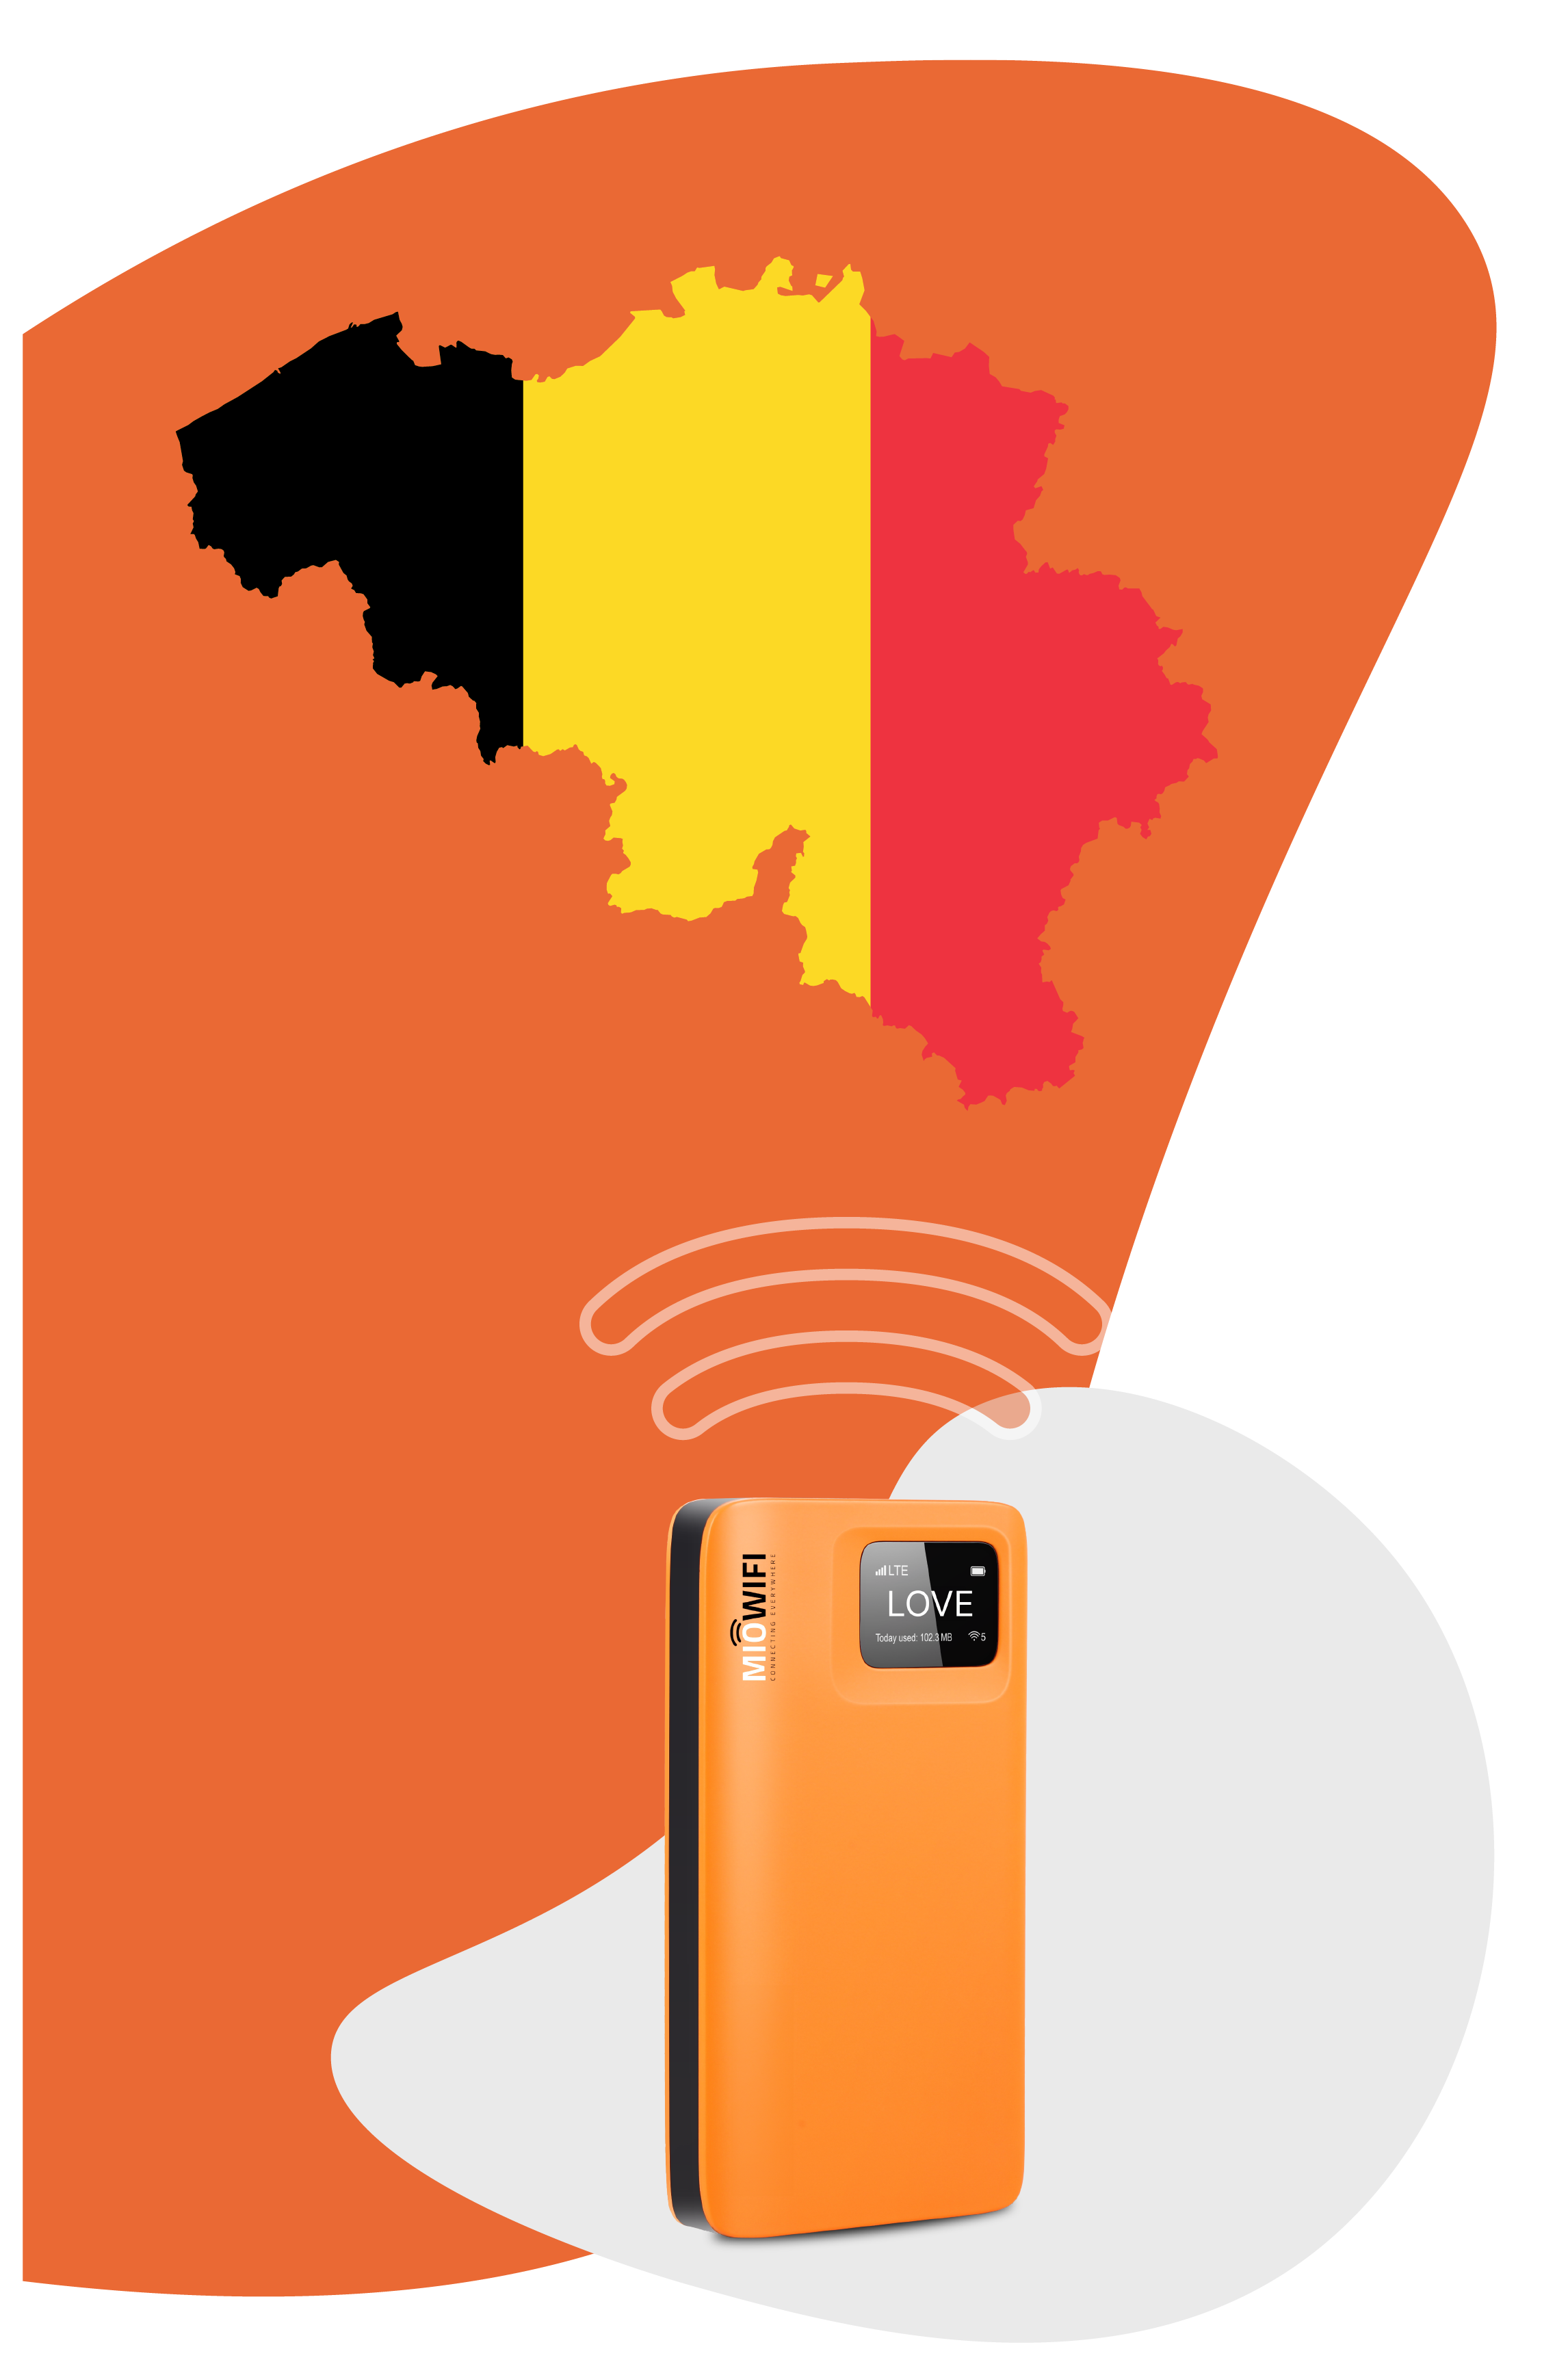  Portable Internet Belgium